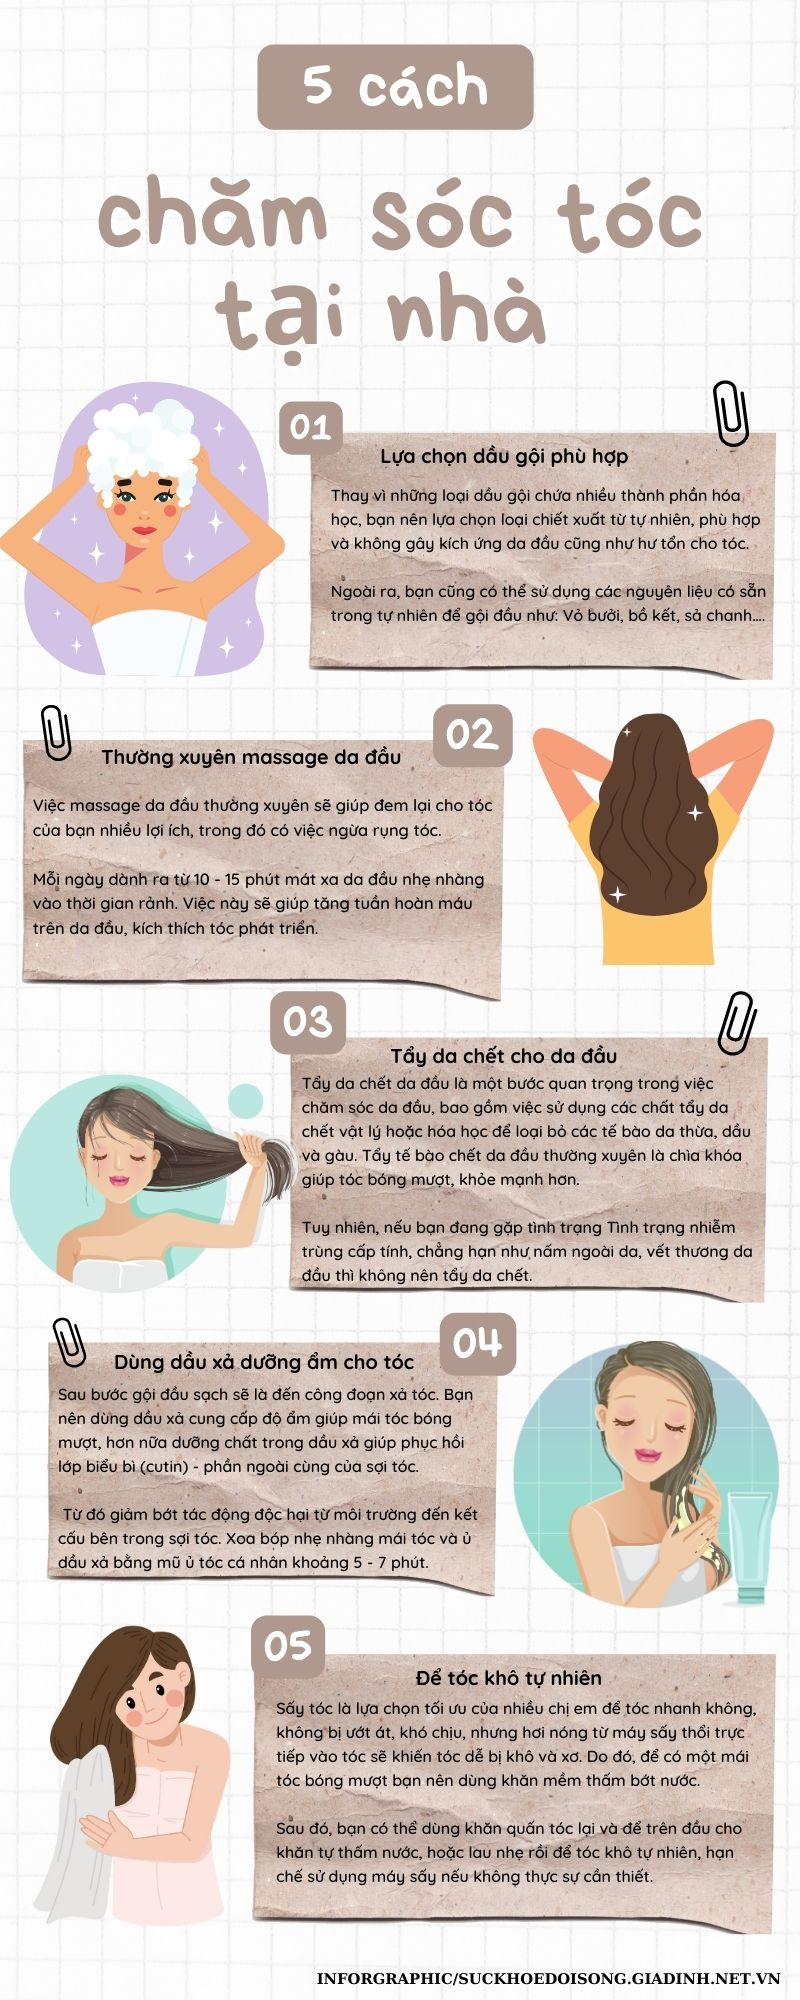 Ghi nhớ 7 cách dưỡng tóc tự nhiên này để có mái tóc bóng mượt như vừa bước  ra từ tiệm